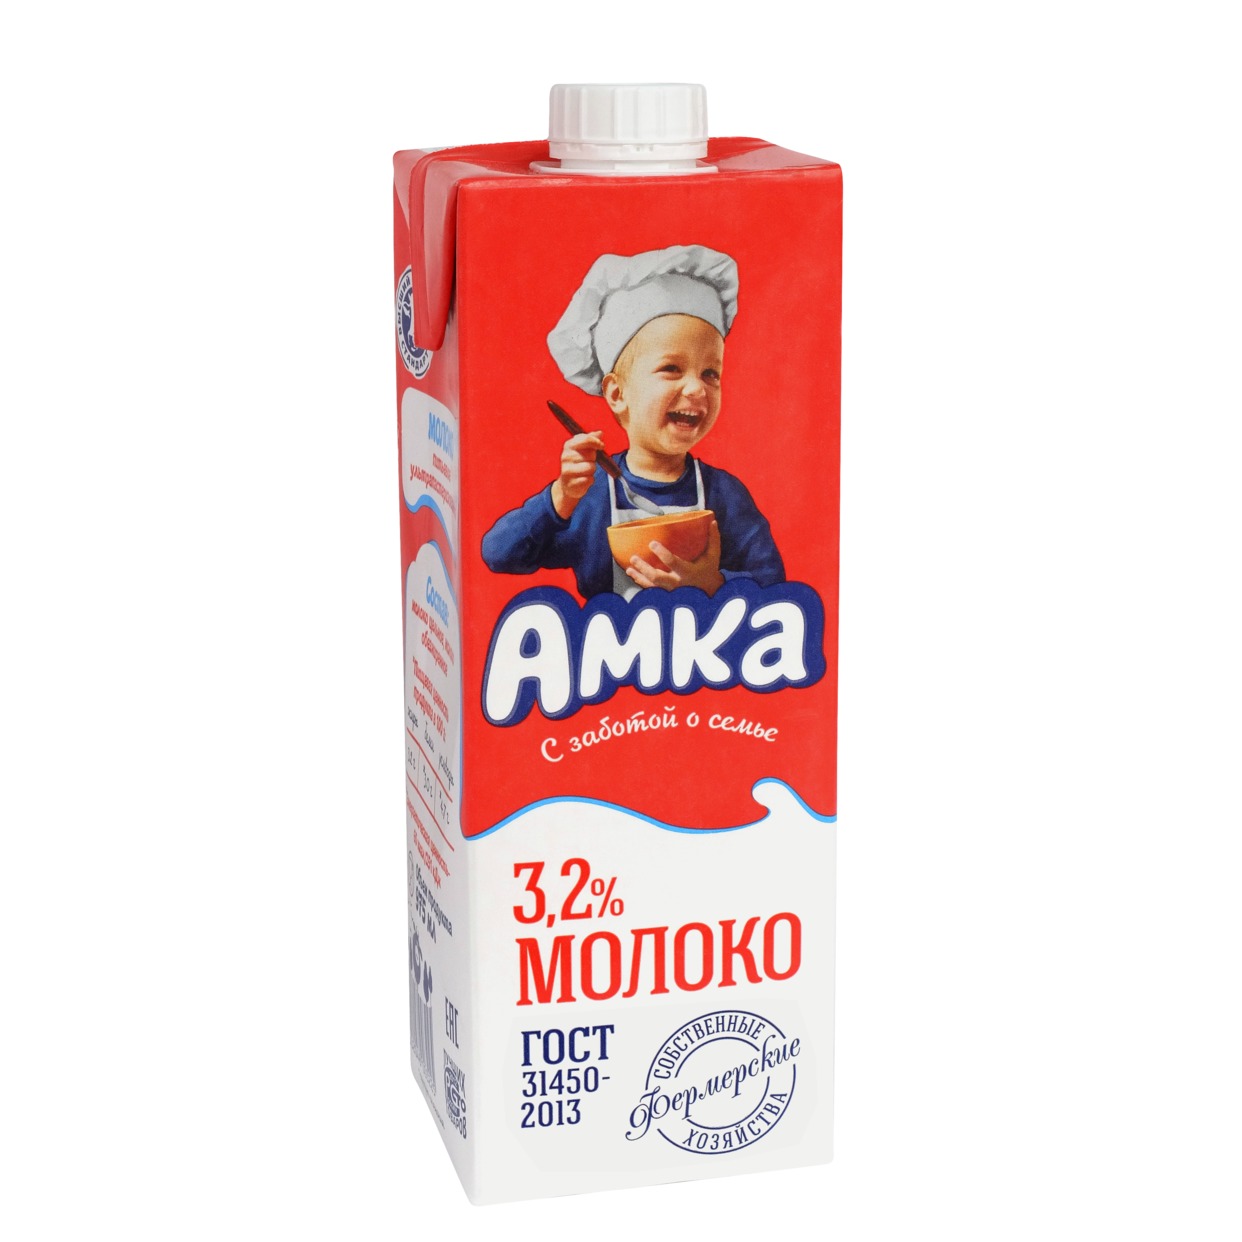 Молоко Амка, ультрапастеризованное, 3,2%, 1000 г по акции в Пятерочке